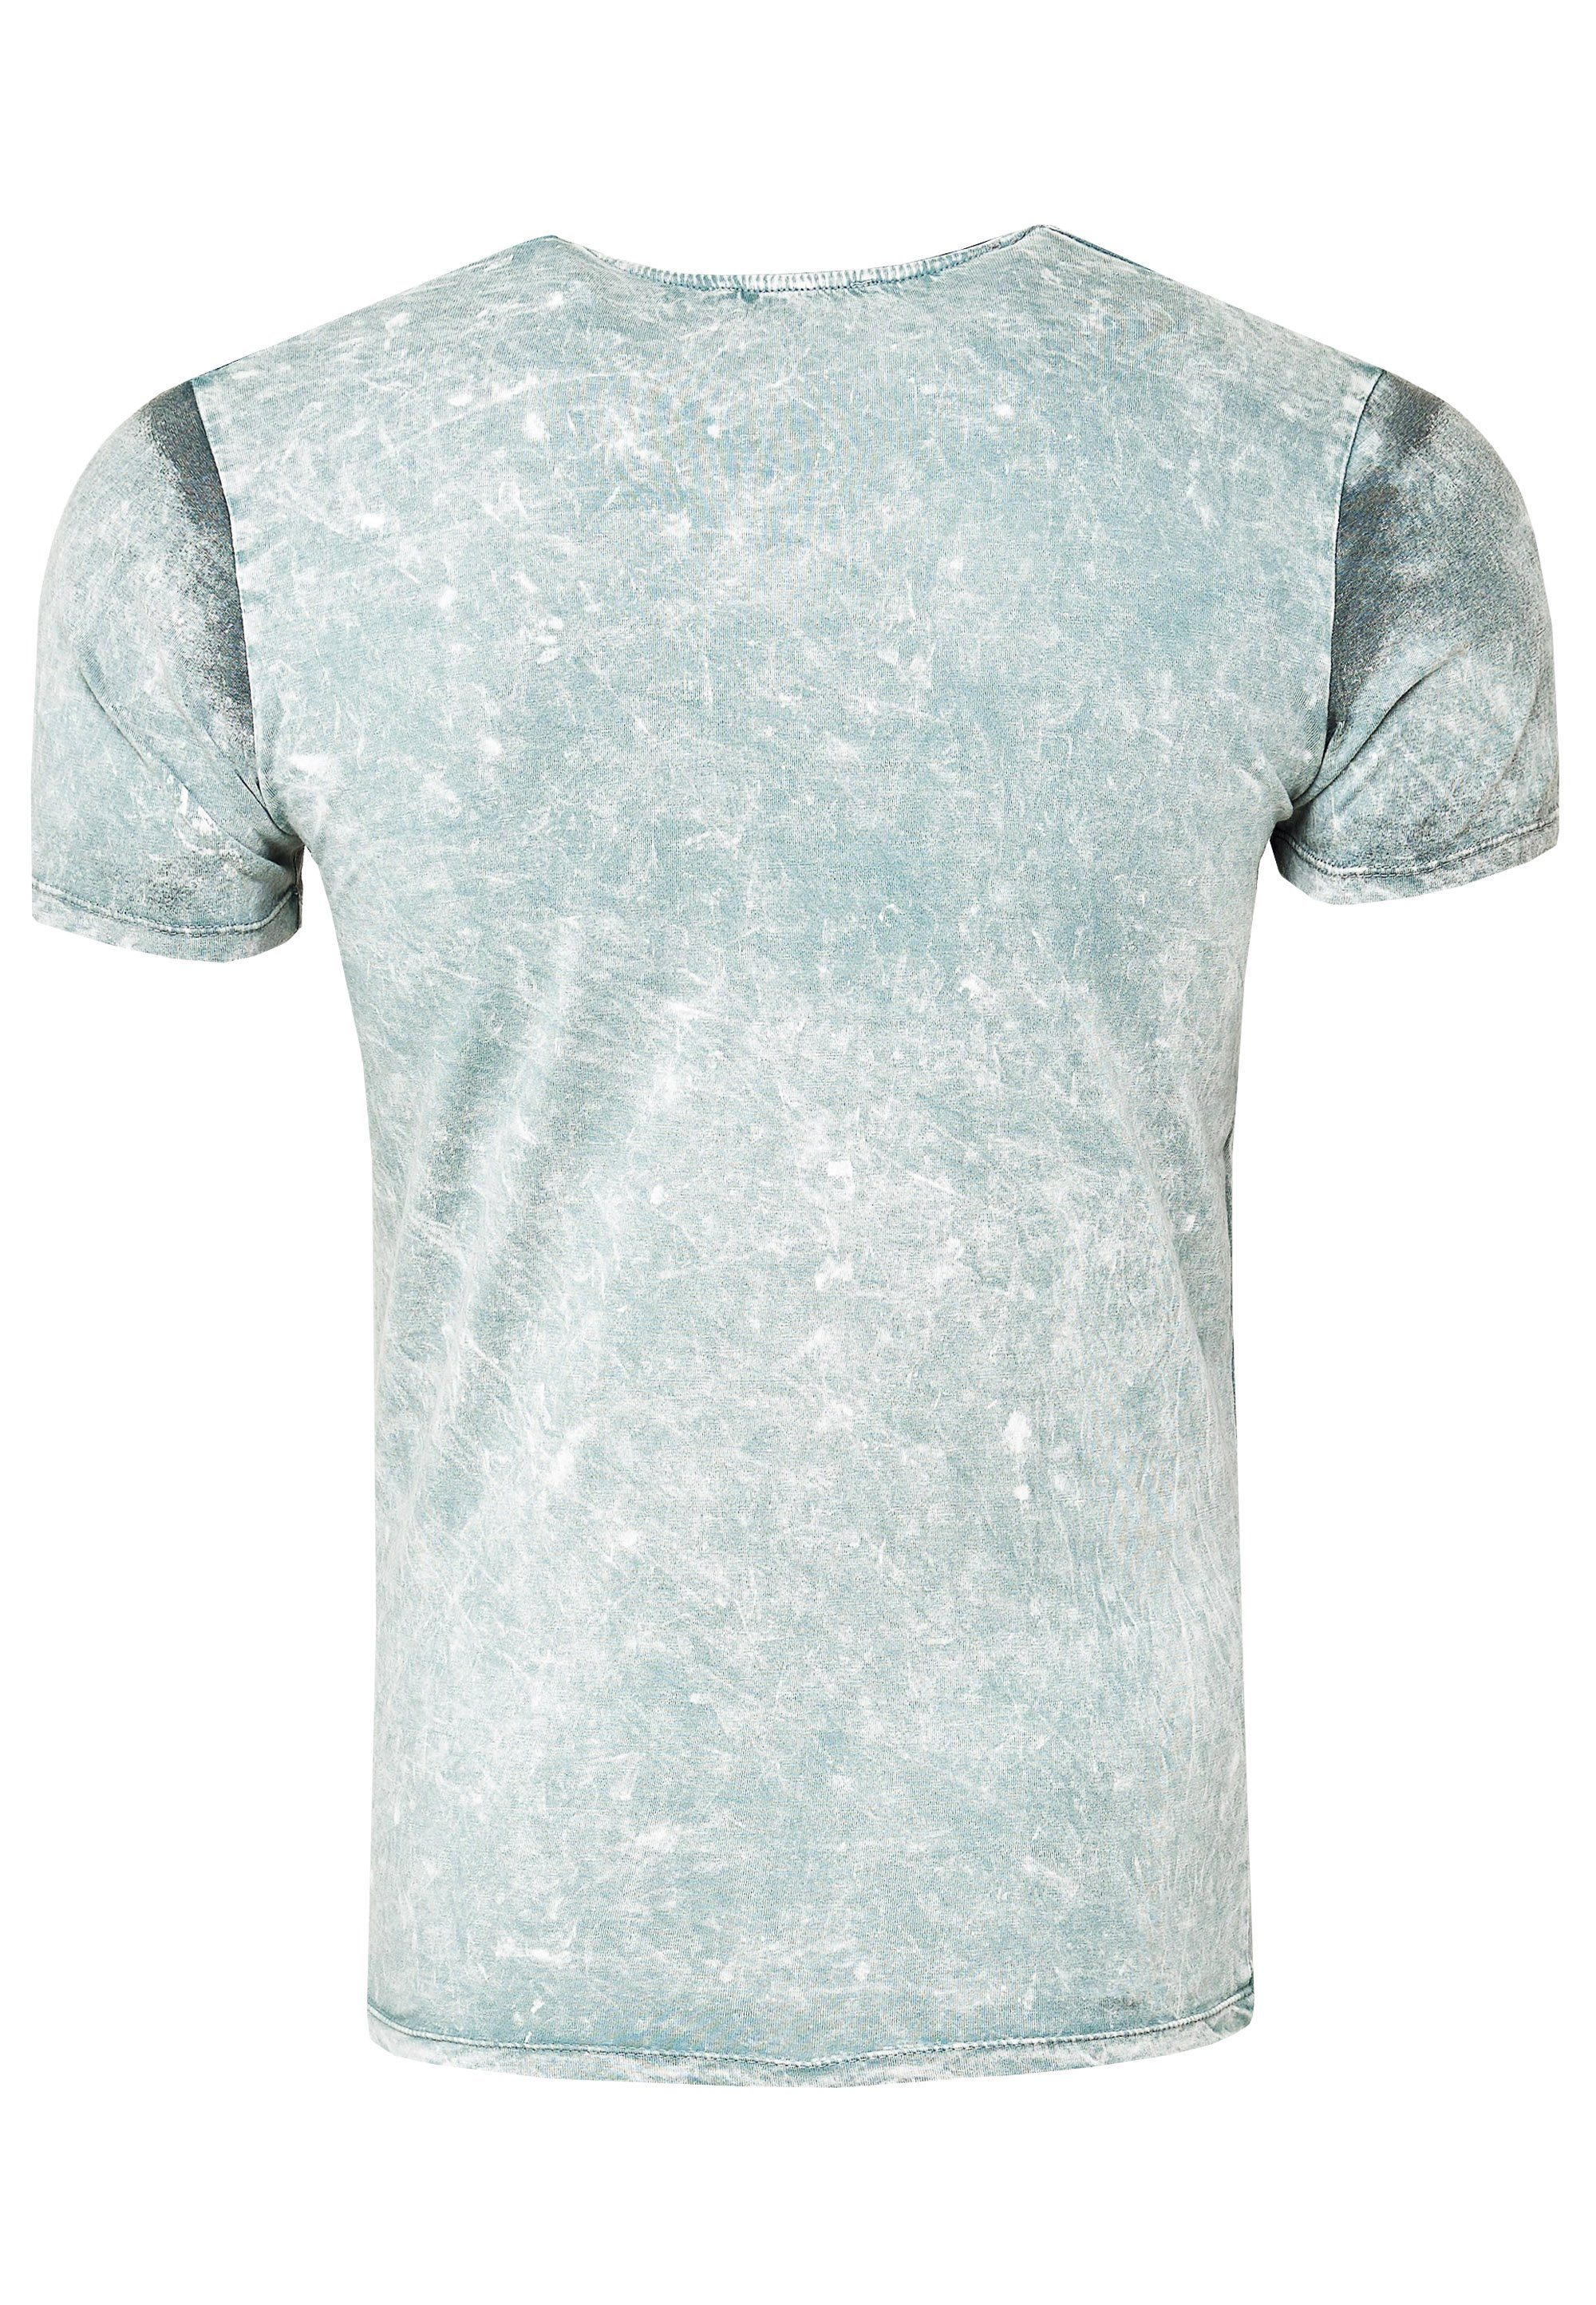 Rusty Neal T-Shirt mit Print grau eindrucksvollem